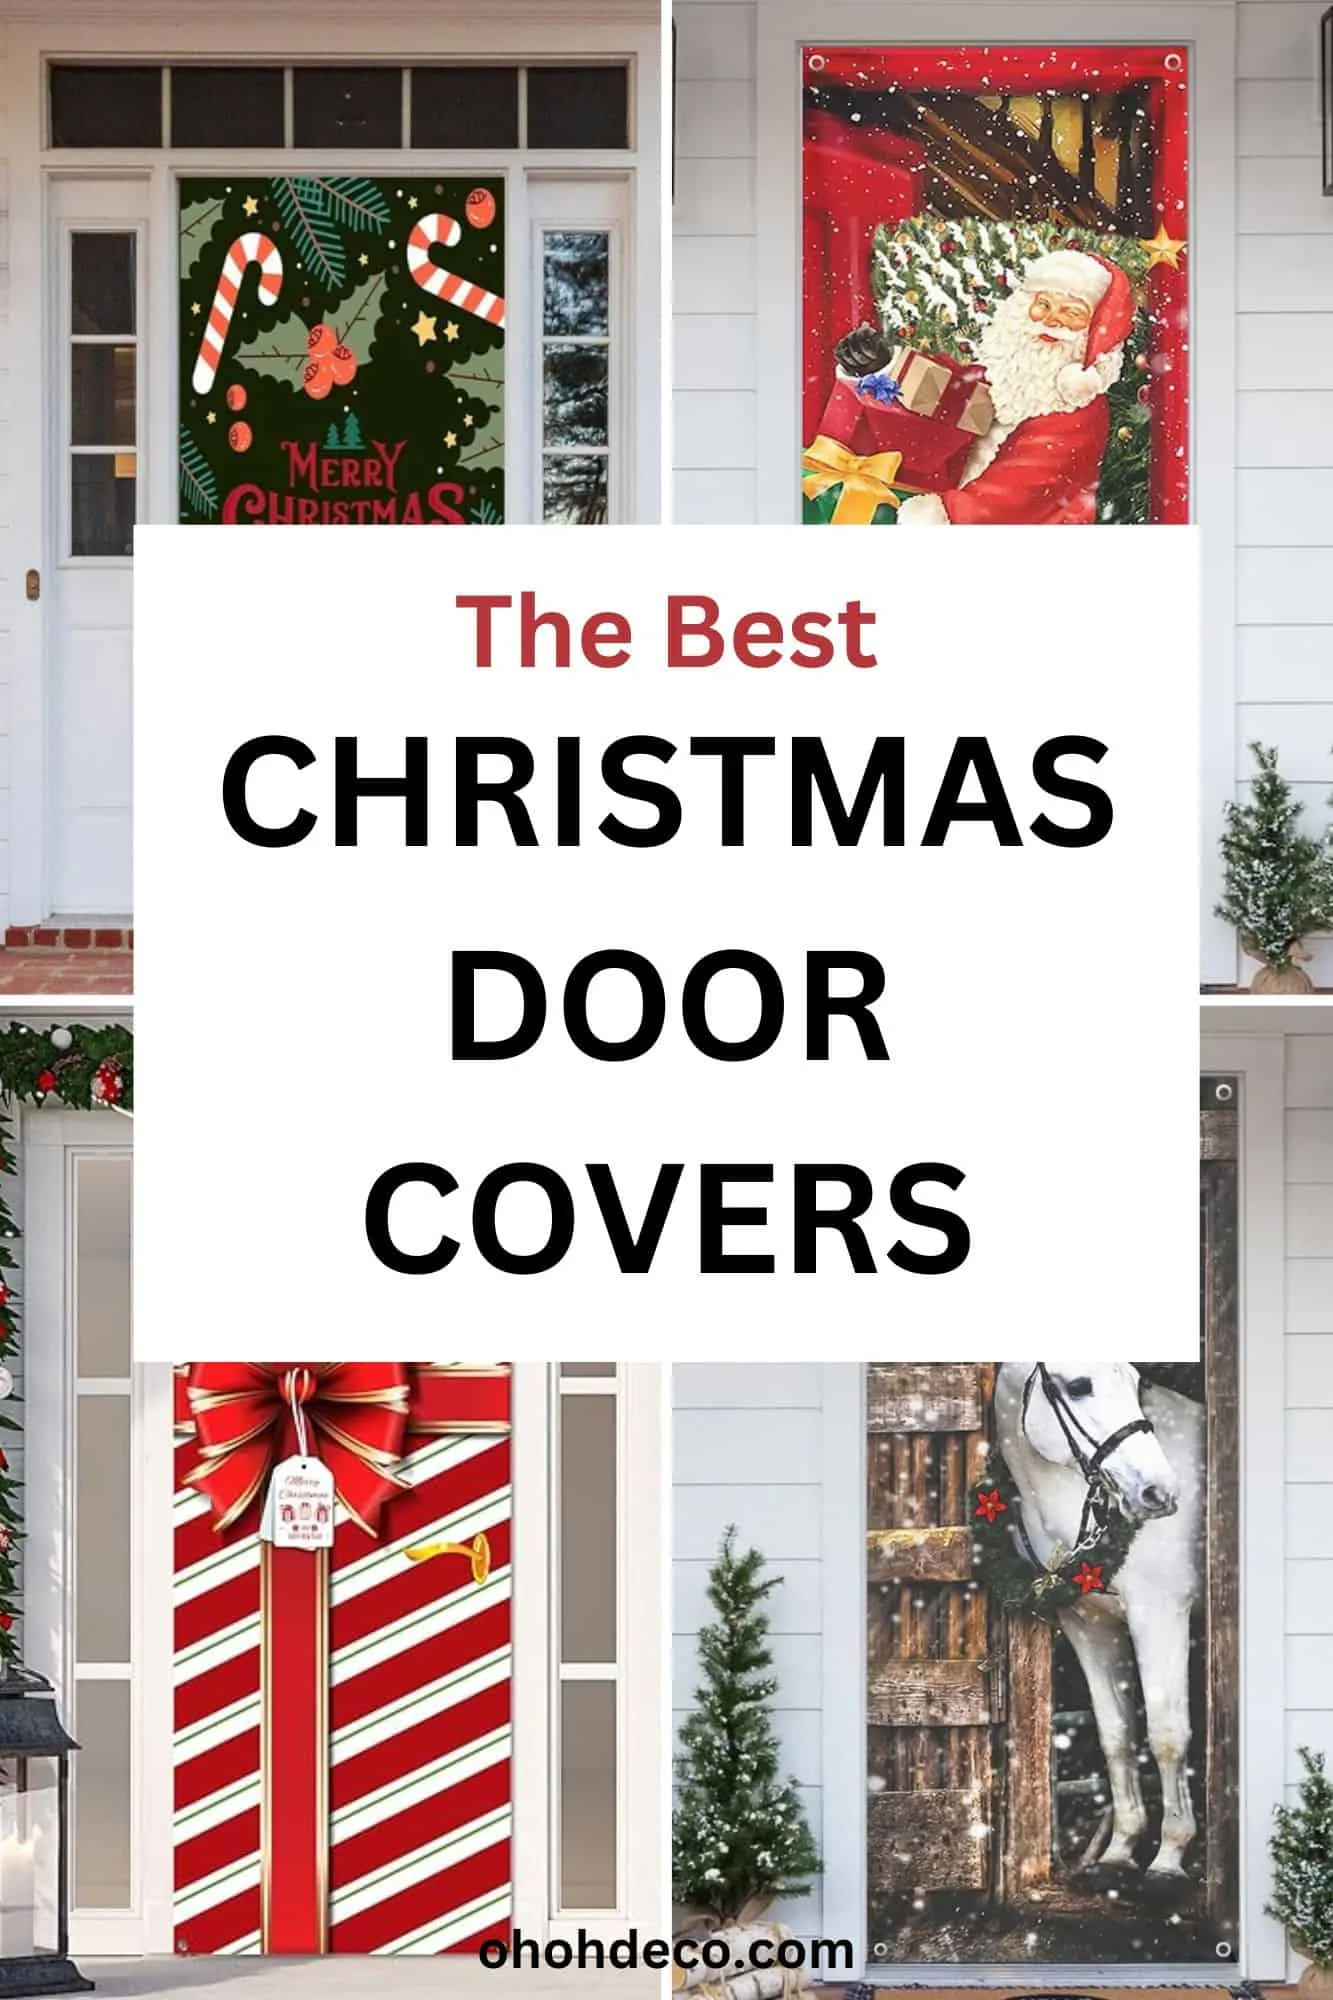 Christmas door covers